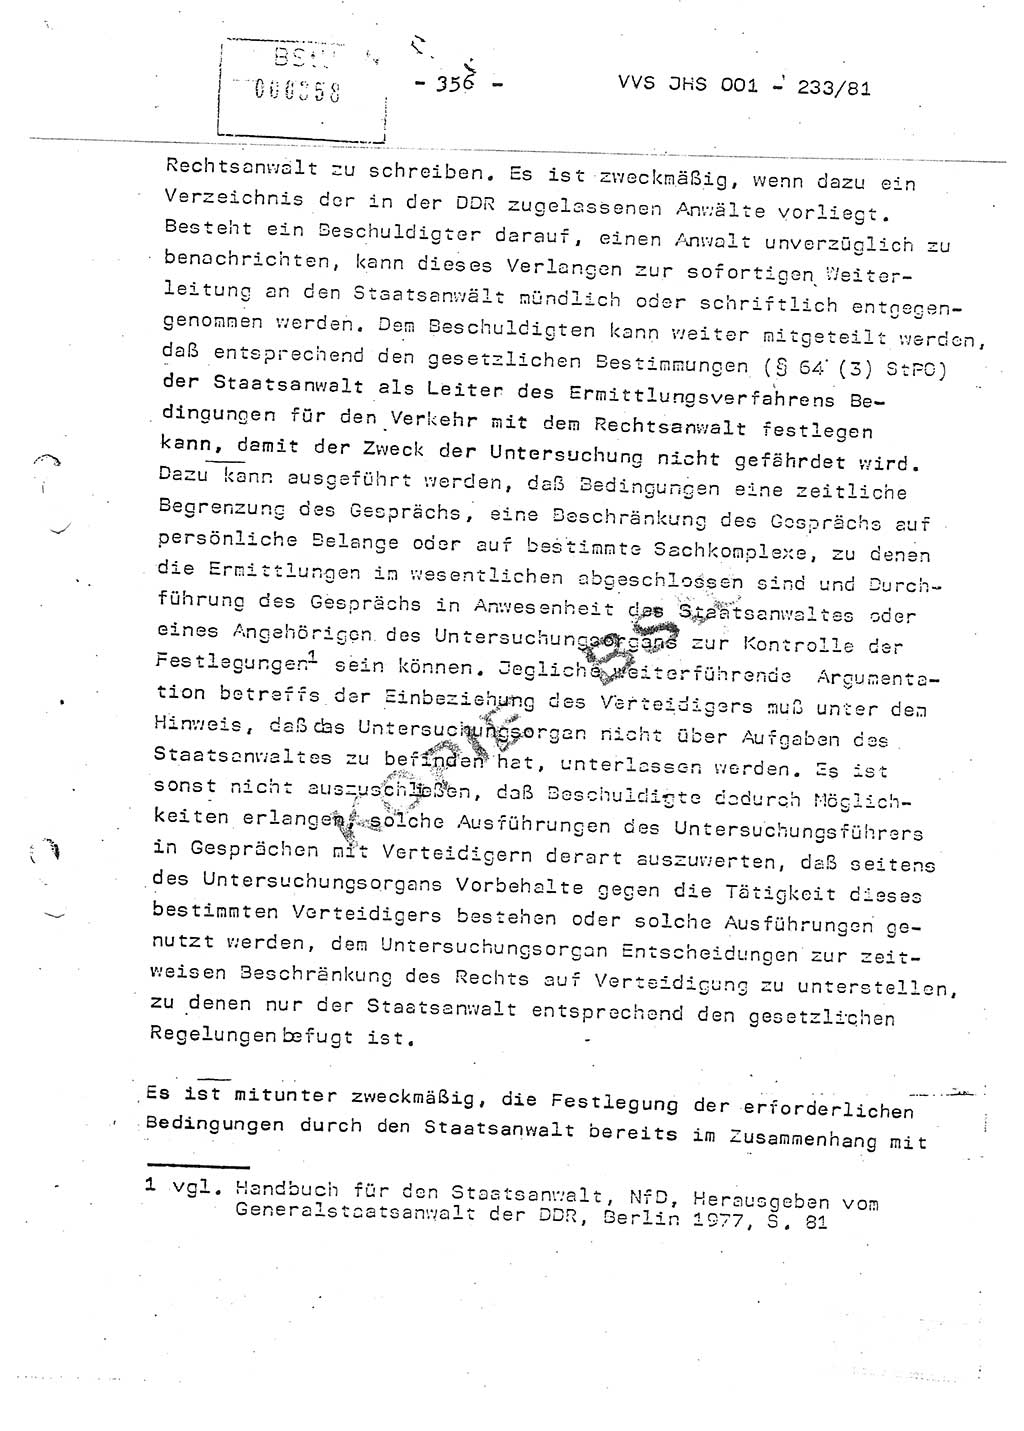 Dissertation Oberstleutnant Horst Zank (JHS), Oberstleutnant Dr. Karl-Heinz Knoblauch (JHS), Oberstleutnant Gustav-Adolf Kowalewski (HA Ⅸ), Oberstleutnant Wolfgang Plötner (HA Ⅸ), Ministerium für Staatssicherheit (MfS) [Deutsche Demokratische Republik (DDR)], Juristische Hochschule (JHS), Vertrauliche Verschlußsache (VVS) o001-233/81, Potsdam 1981, Blatt 356 (Diss. MfS DDR JHS VVS o001-233/81 1981, Bl. 356)